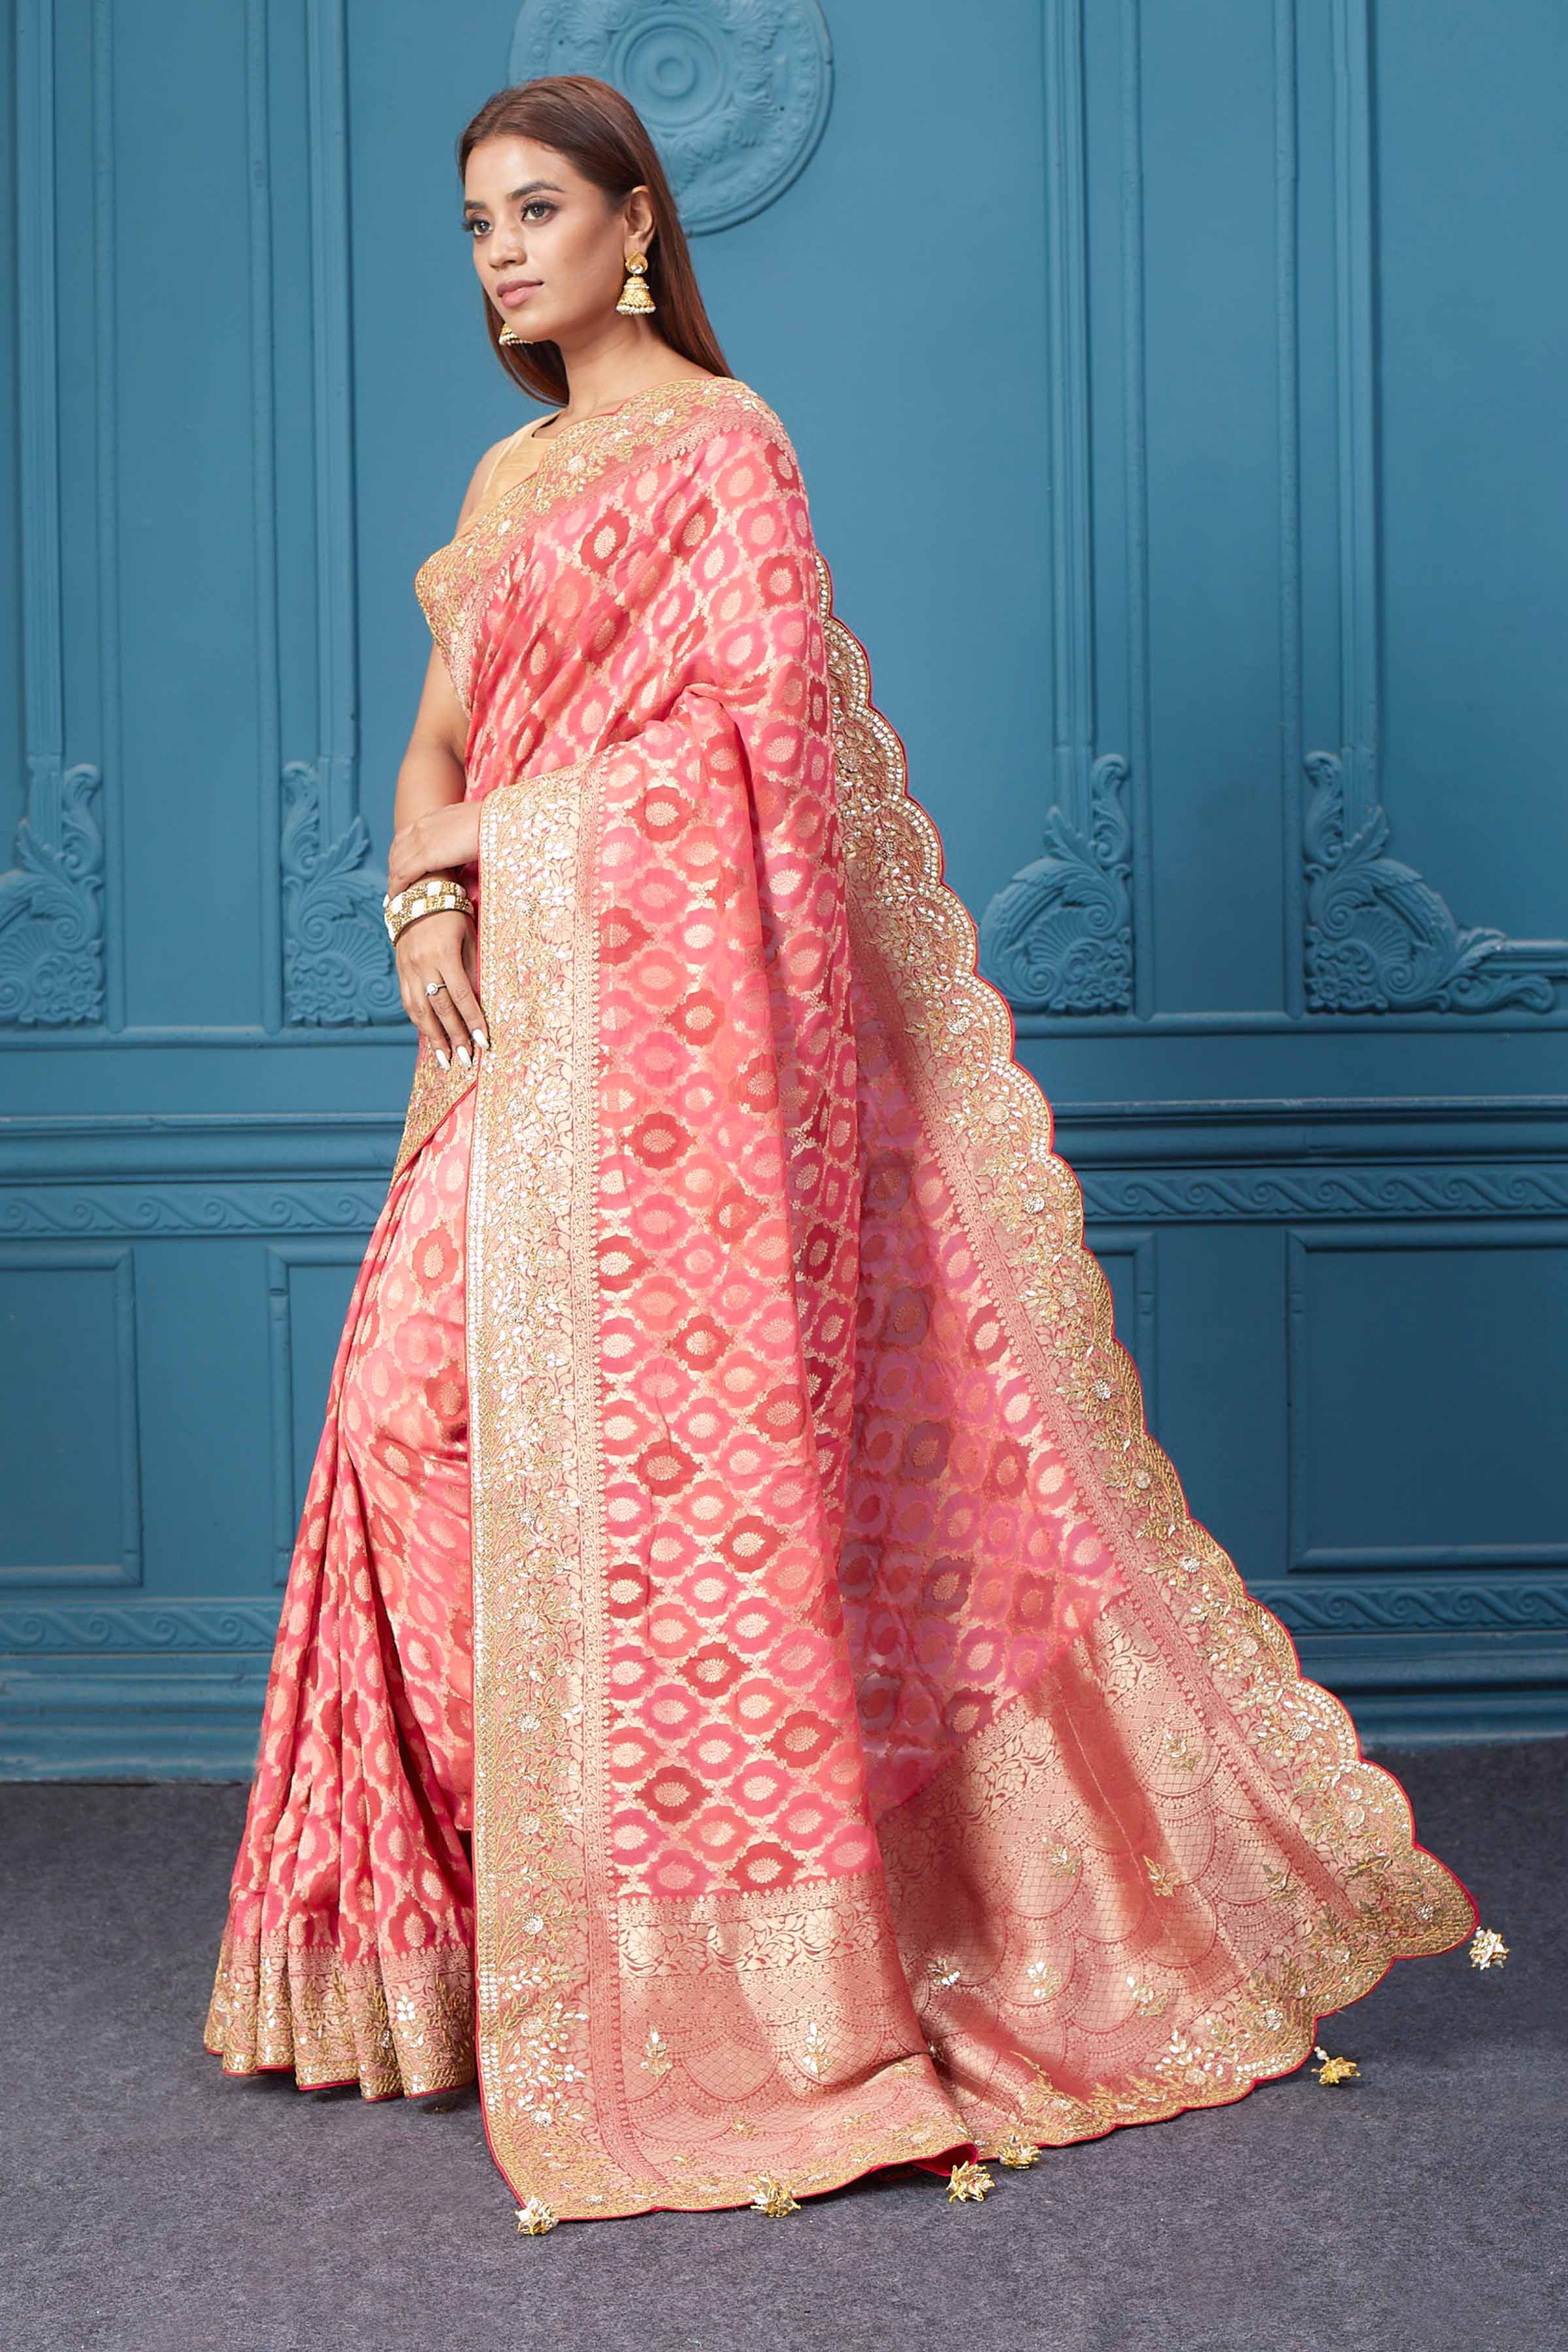 Buy beautiful pink Banarasi saree online in USA with embroidered border. Look royal at weddings and festive occasions in exquisite designer sarees, handwoven sarees, pure silk saris, Banarasi sarees, Kanchipuram silk sarees from Pure Elegance Indian saree store in USA. -pallu